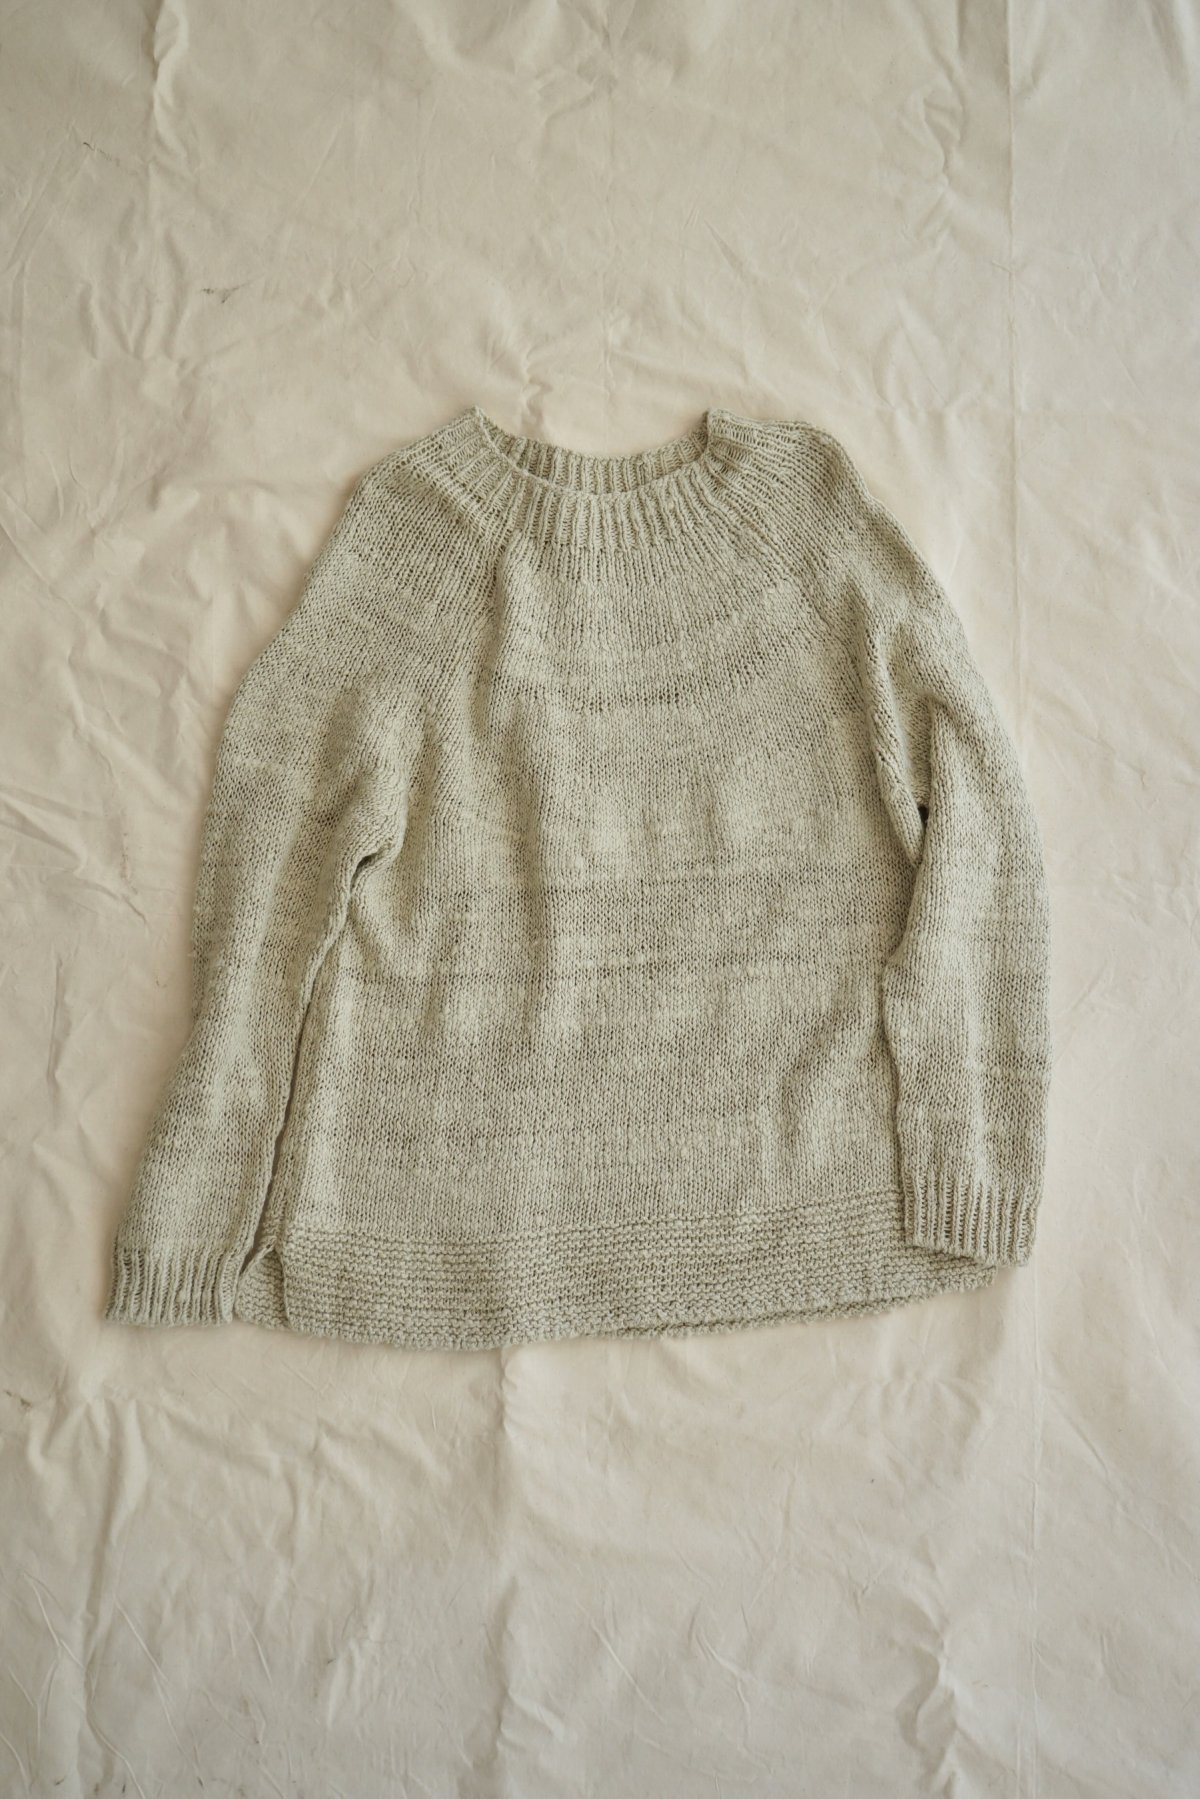 COSMIC WONDER / Garabou summer sweater / Light beige